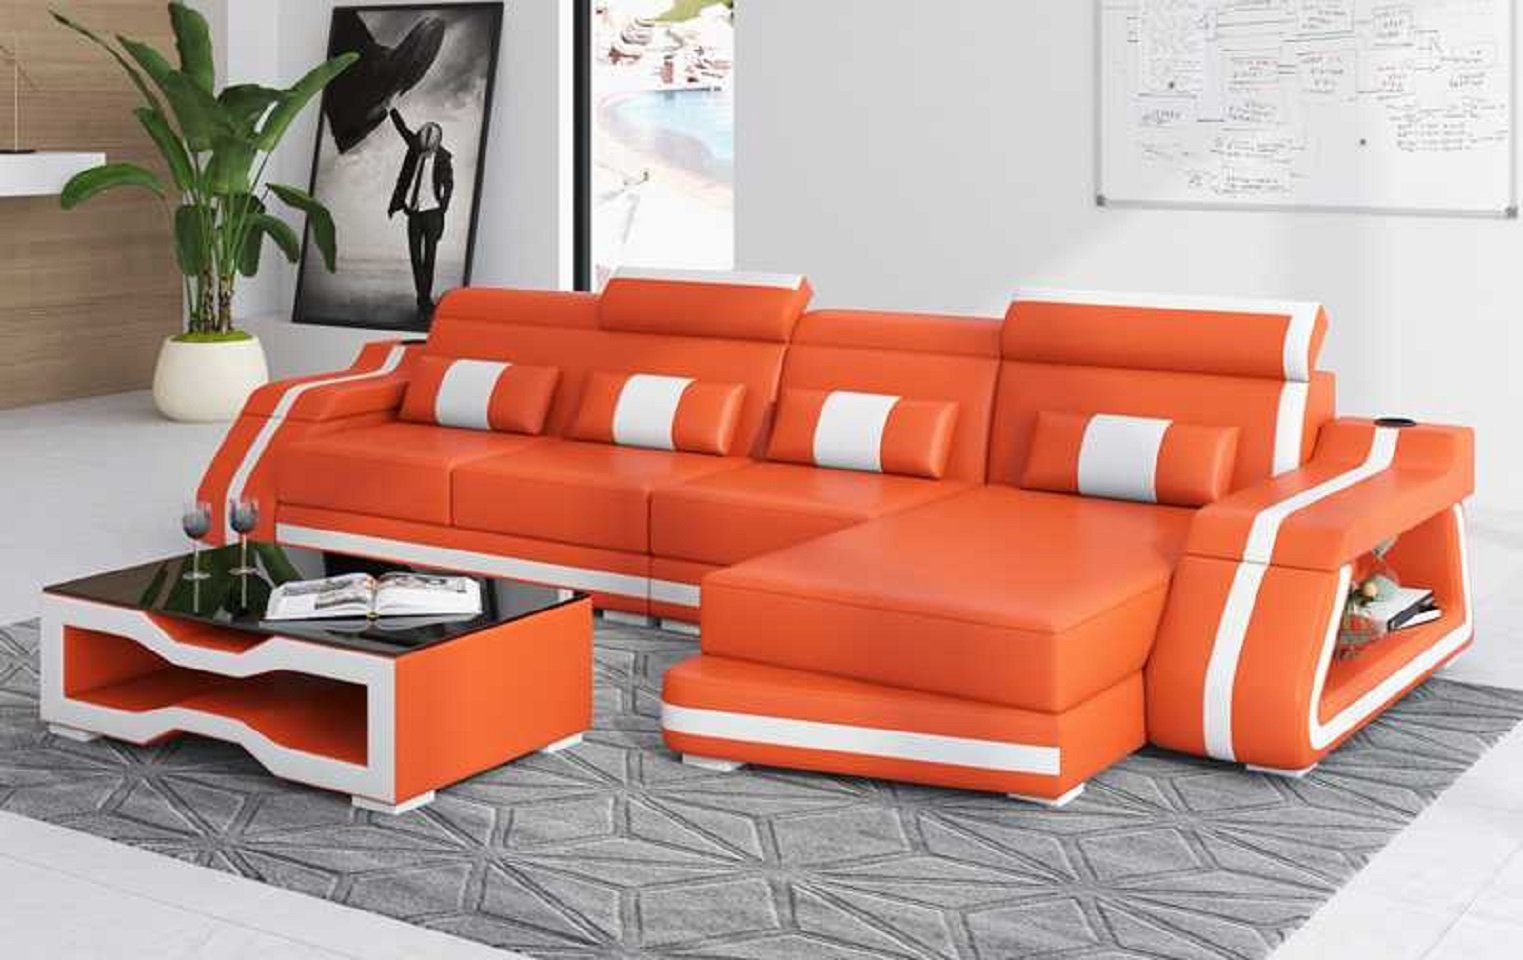 JVmoebel Ecksofa Modern Ecksofa L Form Liege Ledersofa Kunstleder Sofa Couchen, 3 Teile, Made in Europe Orange